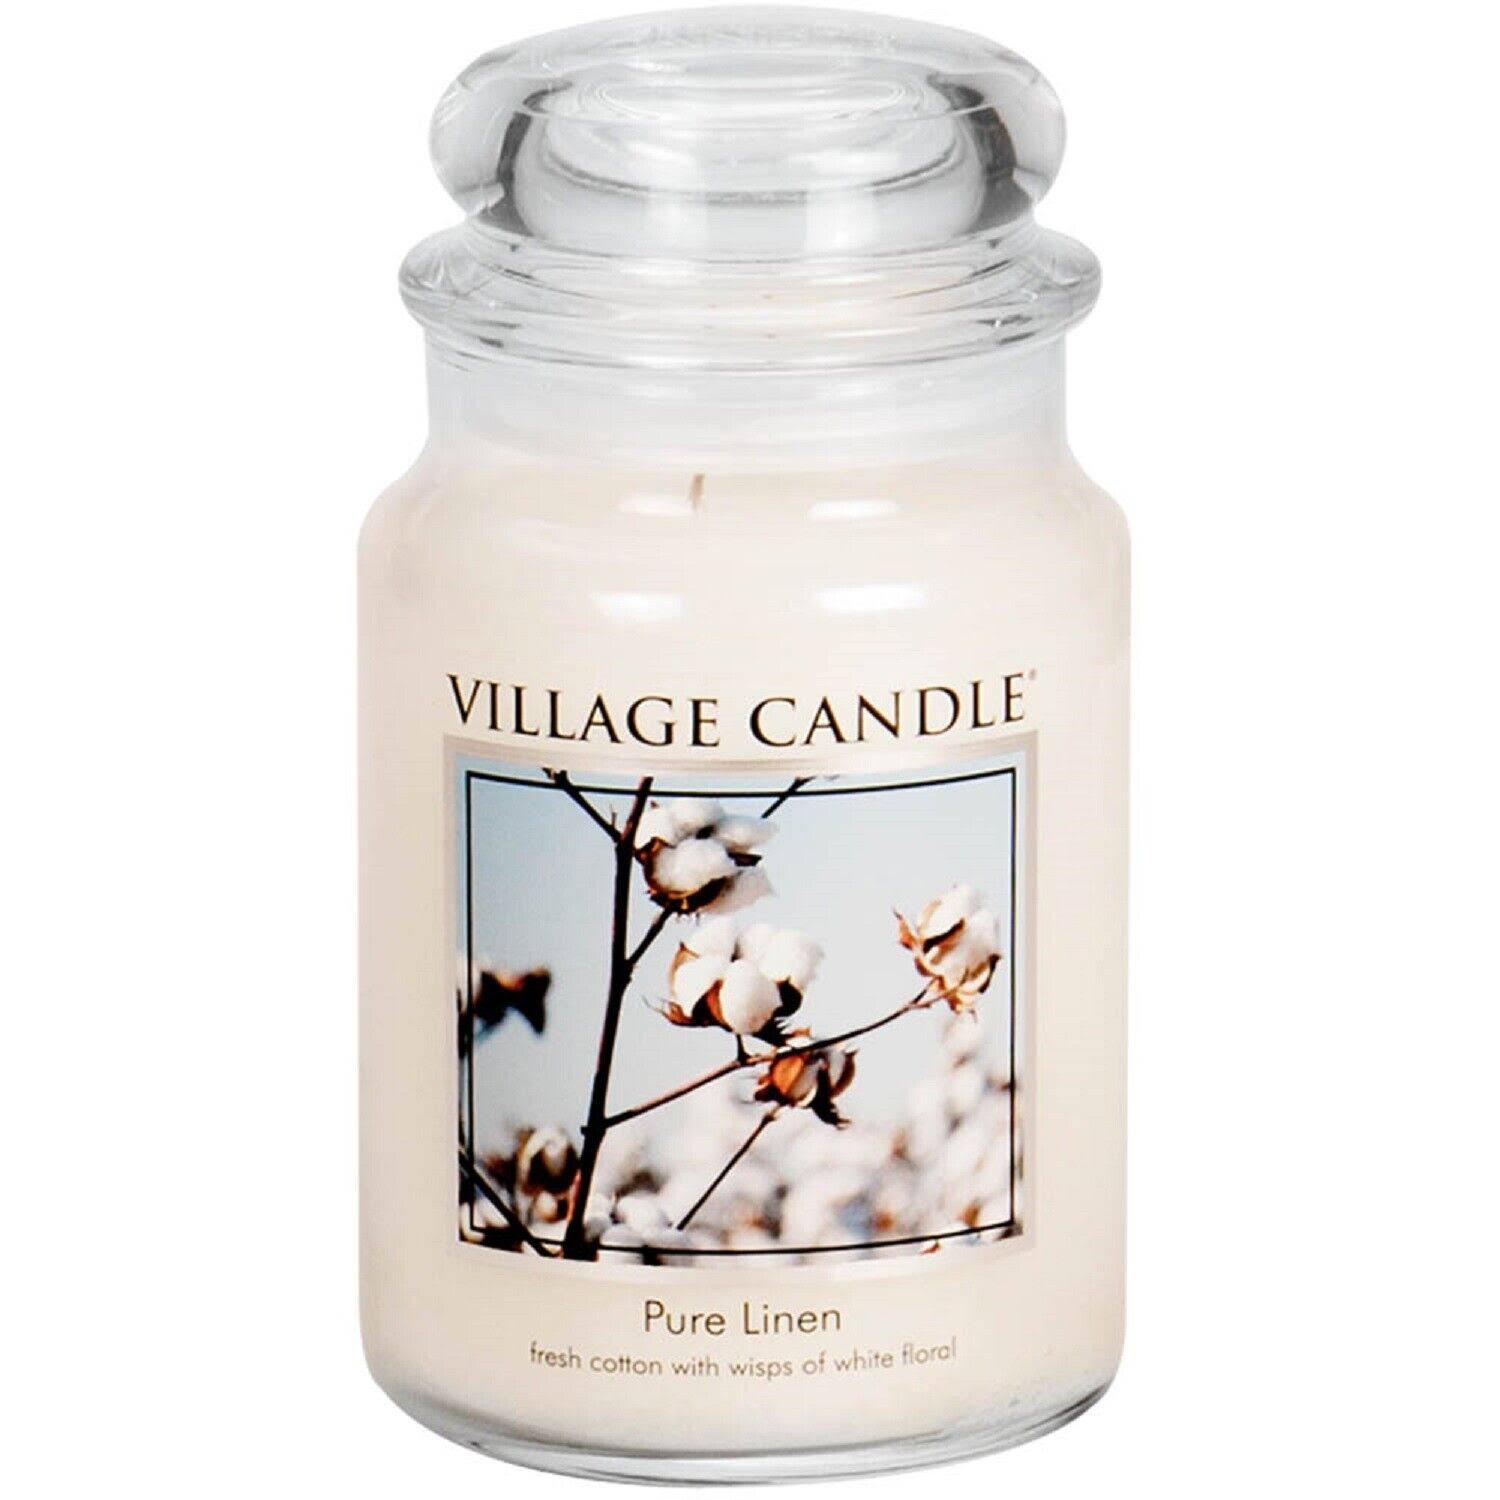 Village Candle Pure Linen 26 oz Candle Jar #124026339